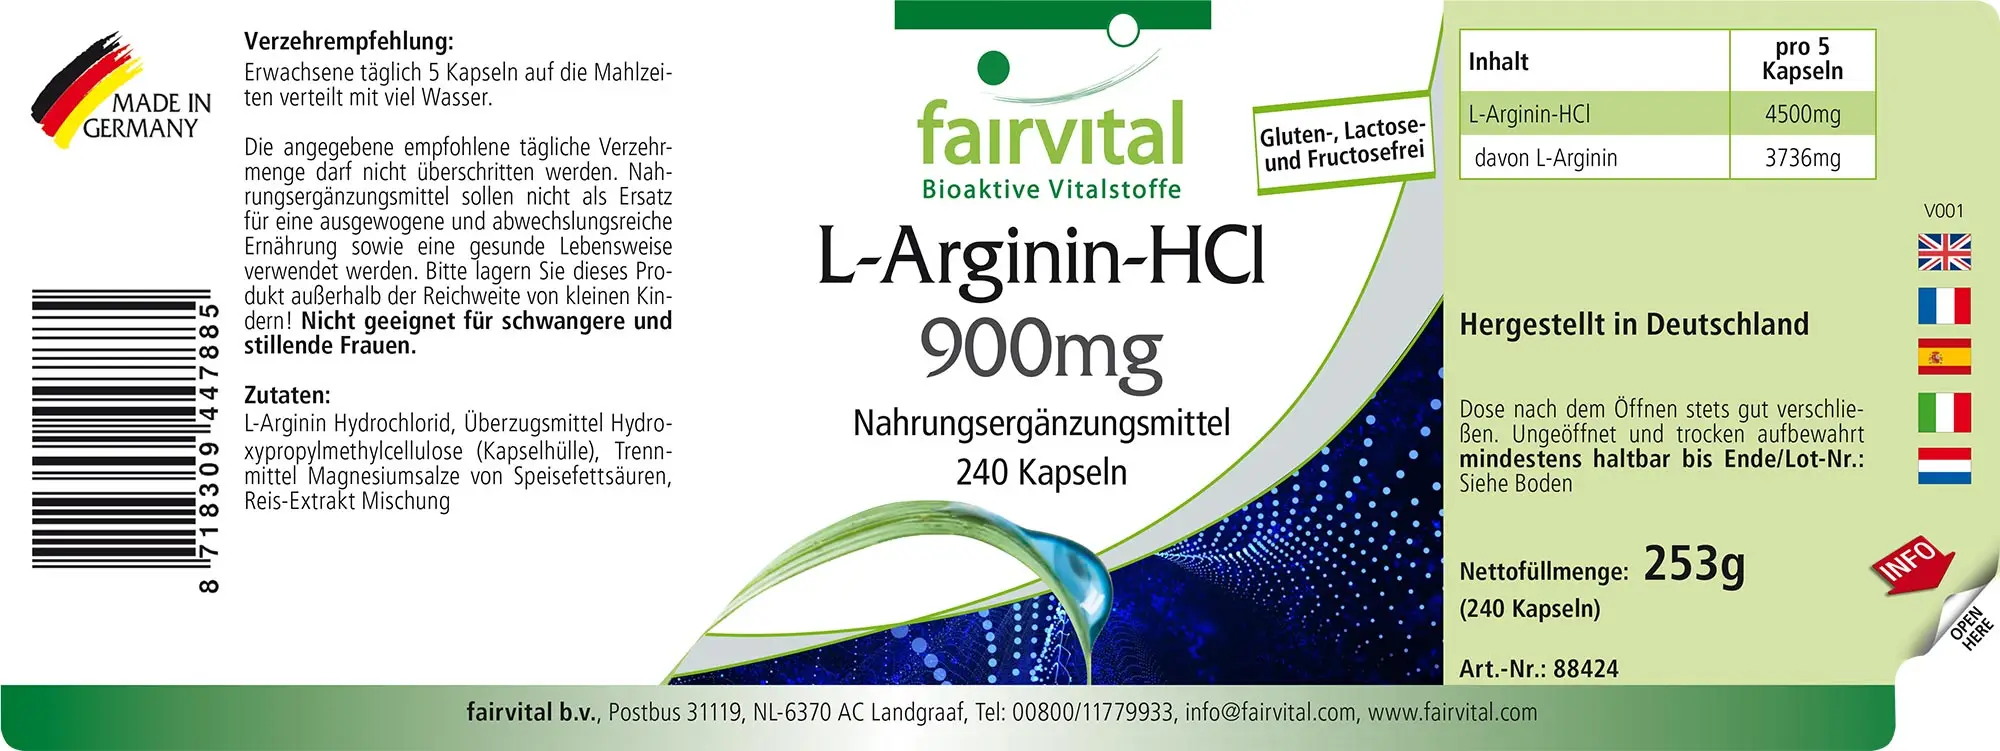 L-arginine HCl 900mg - 240 capsules